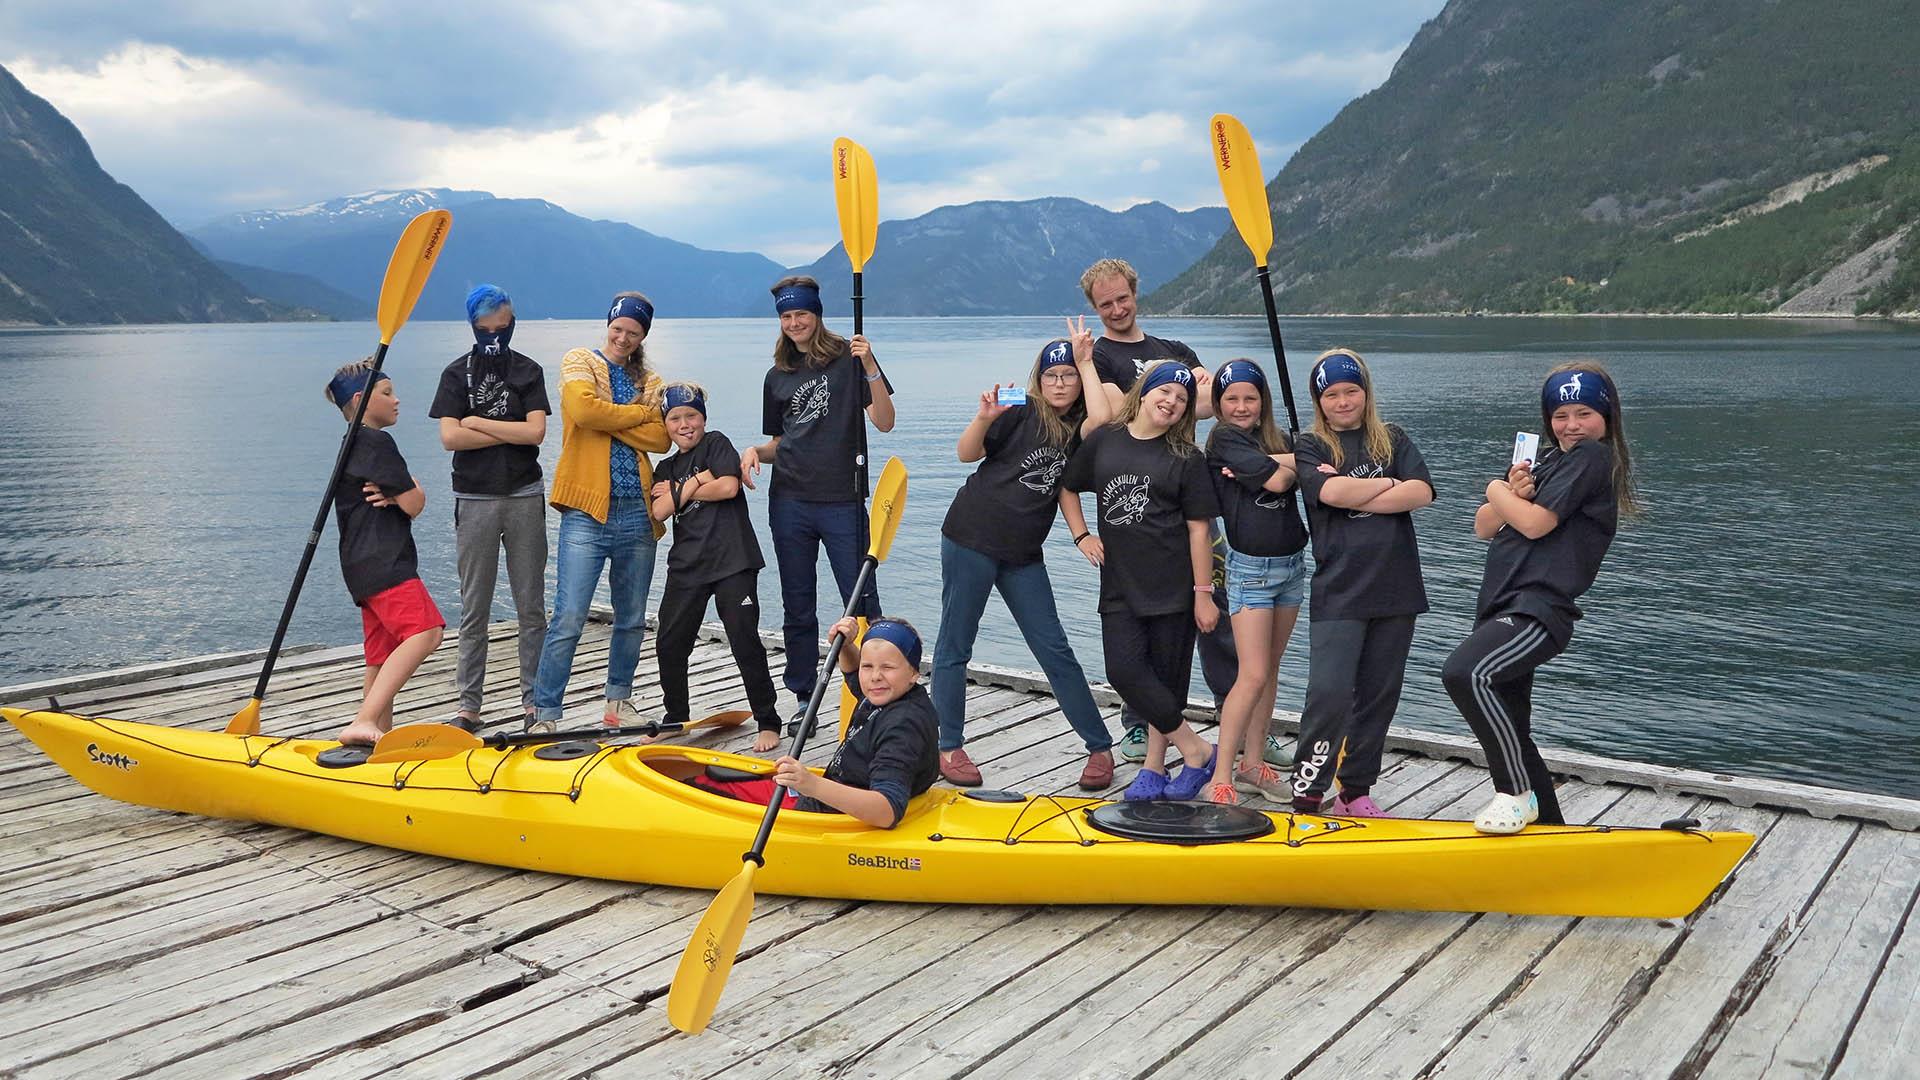 En gruppe kajakkelever og en gul kajakk på en brygge ved en fjord.